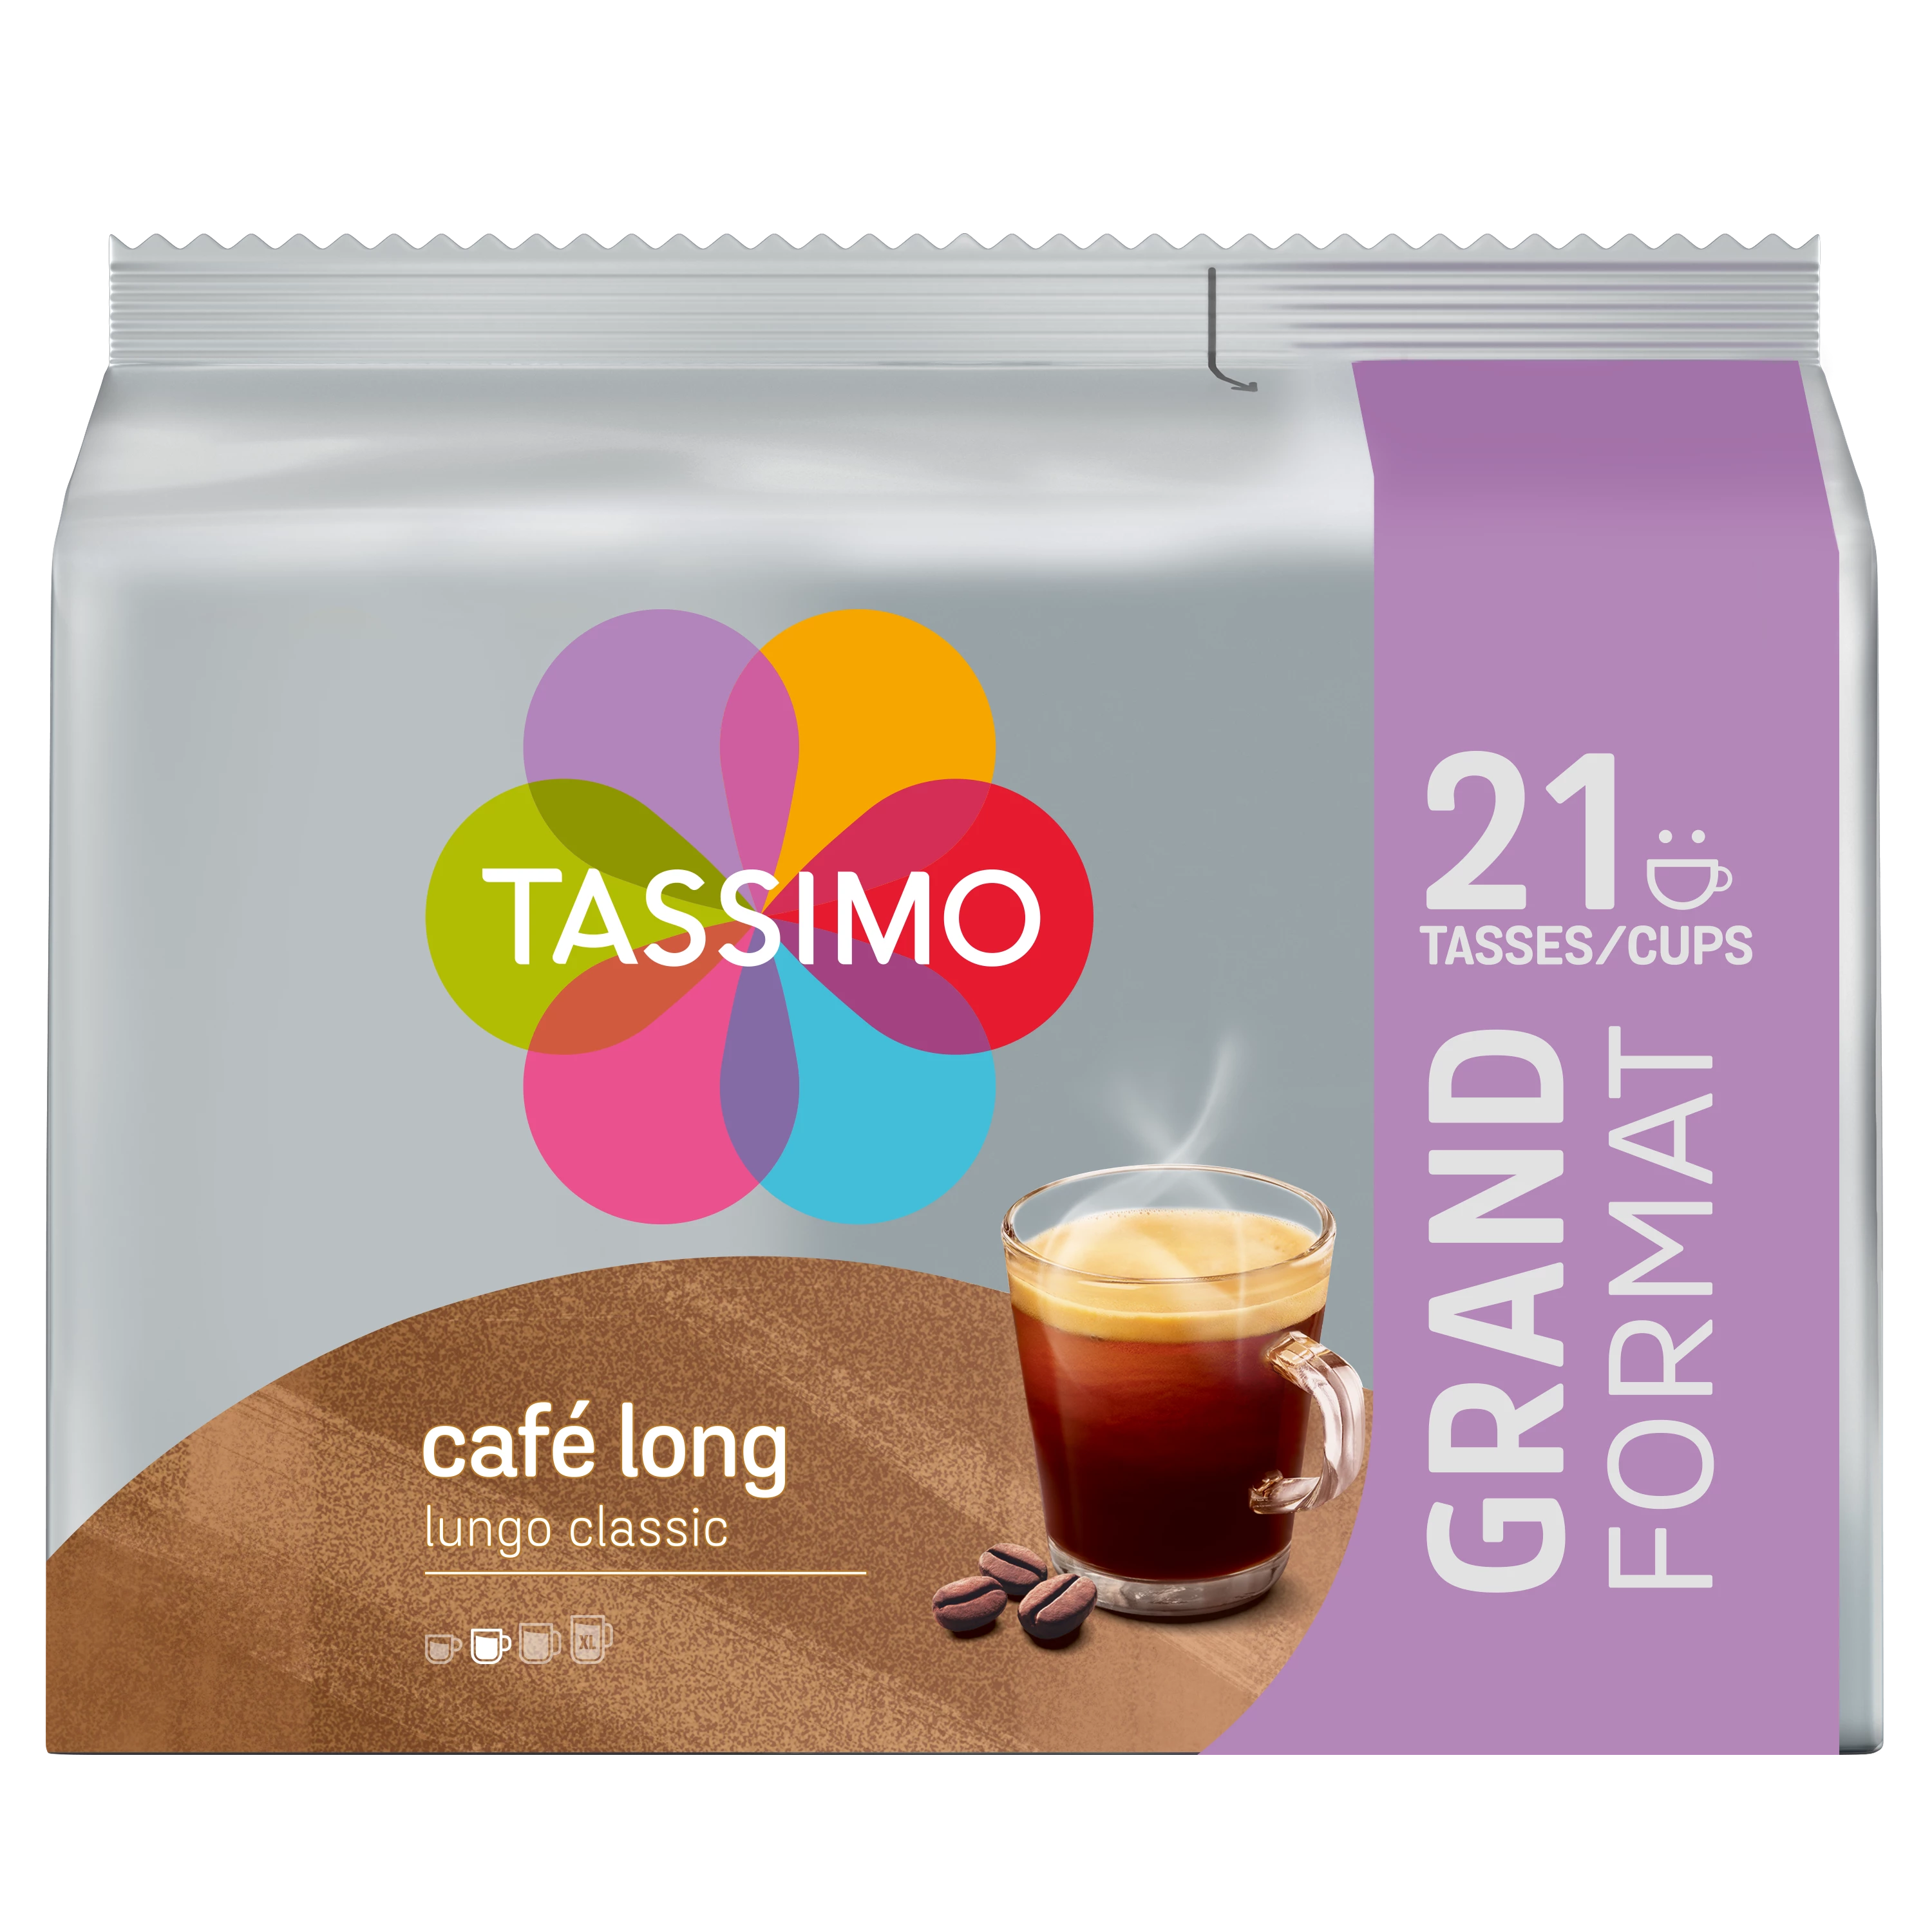 Tassimo Café Lungo Clas X21 141g - TASSIMO